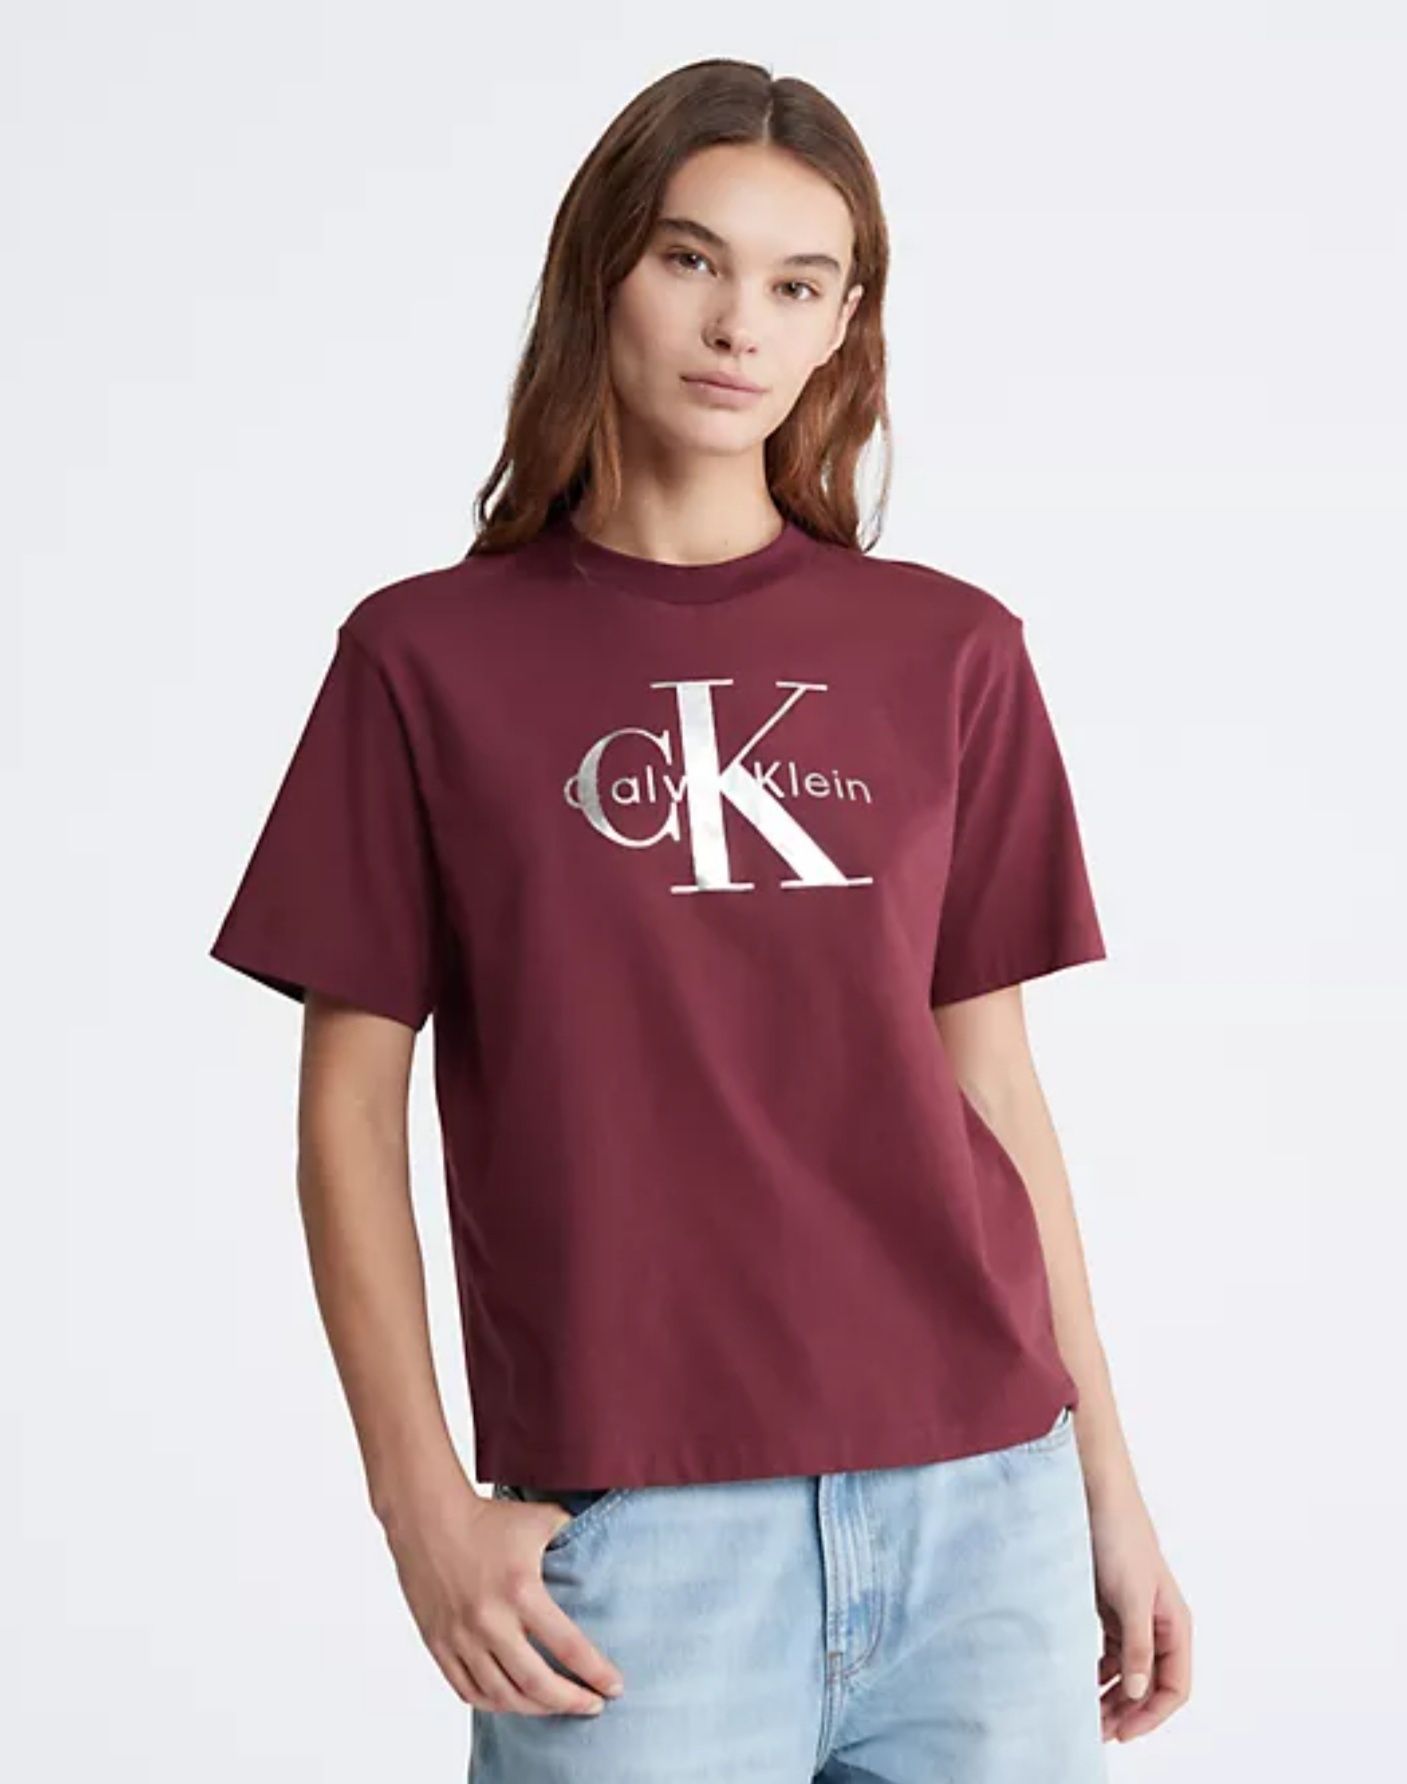 Жіноча футболка Calvin Klein оригінал